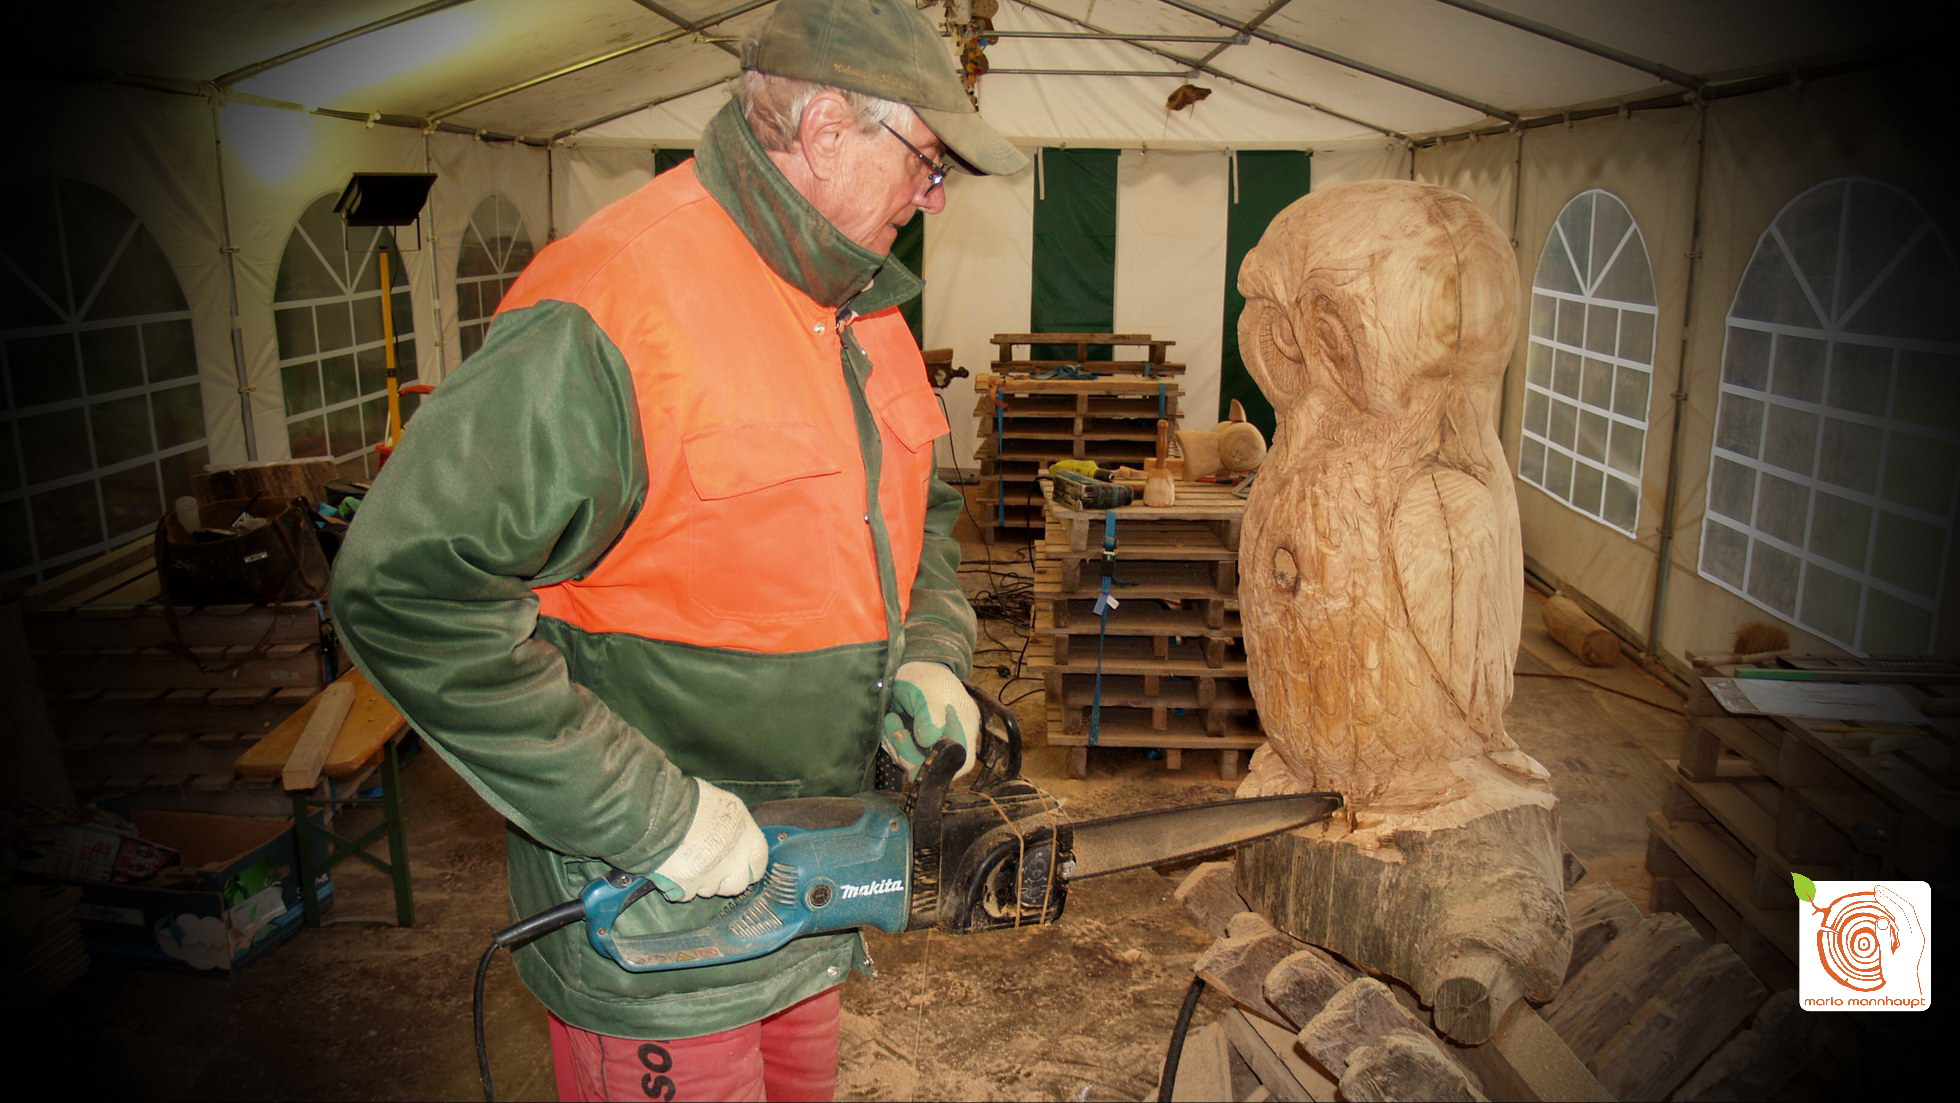 Workshop - Holz Bildhauerkurs K2 mit Kettensäge